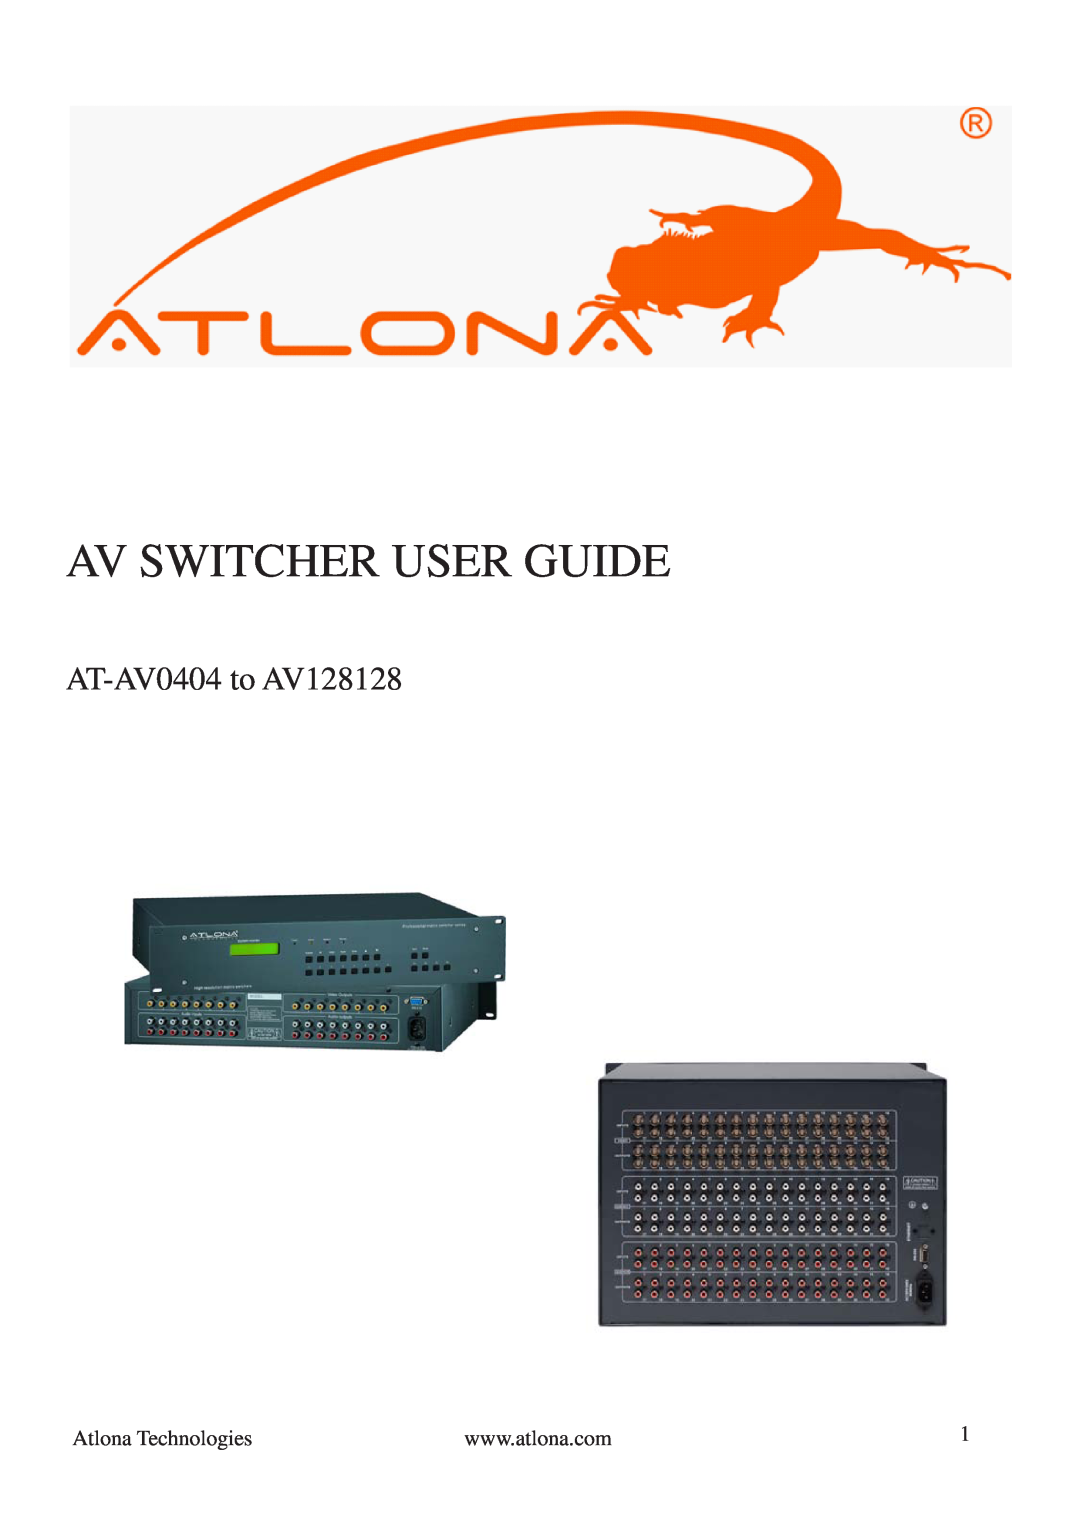 Atlona manual Av Switcher User Guide, AT-AV0404 to AV128128 